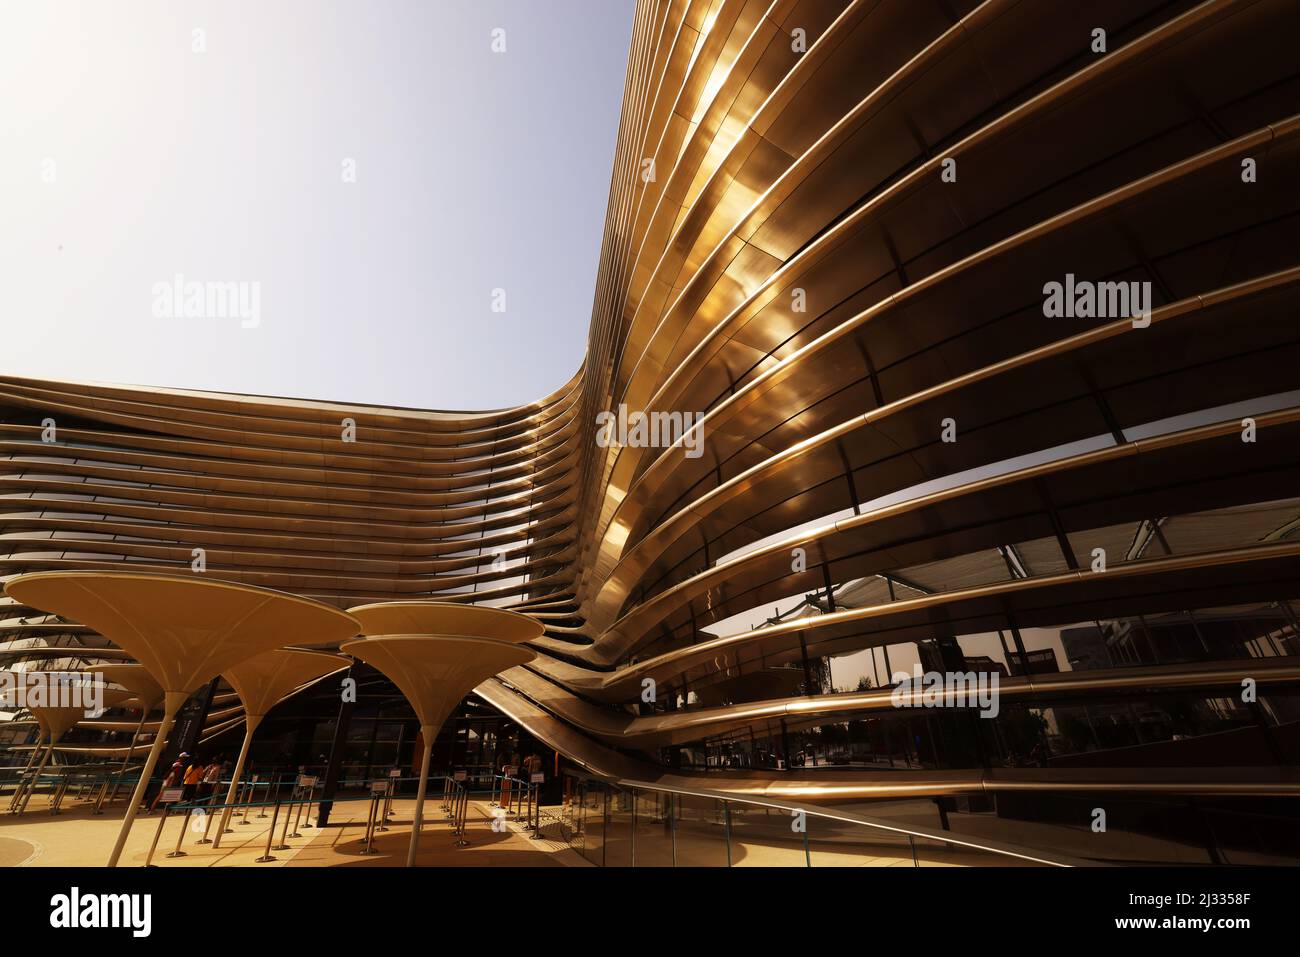 Dubai Expo, moderne Architektur, Weltausstellung, Kunst, Modernes Design aus Metall, Eisen und Stahl im Mobility Pavillon Foto Stock